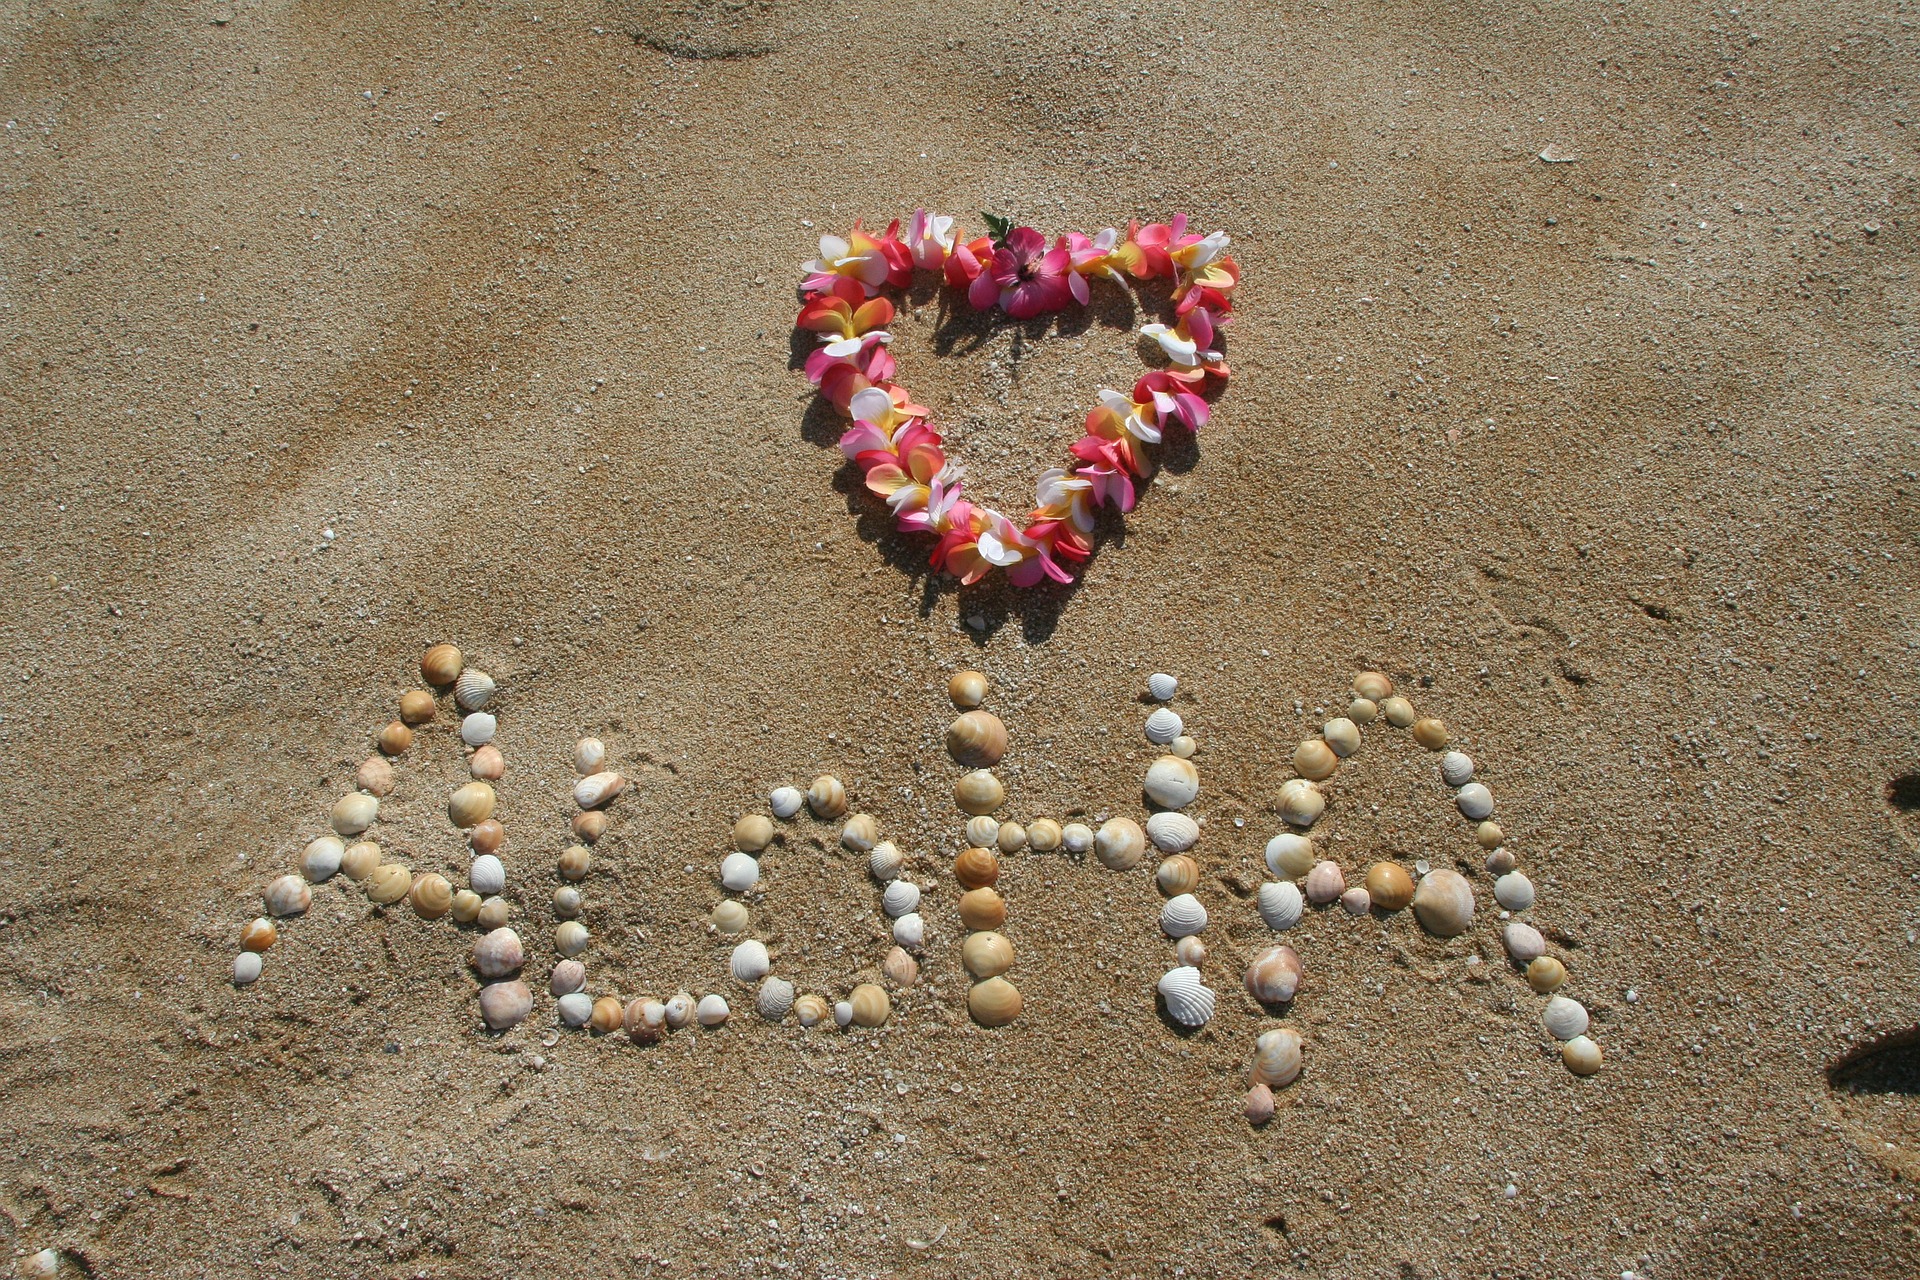 Foto am Strand mit Aloha-Schriftzug und Blumenkranz in Herzform